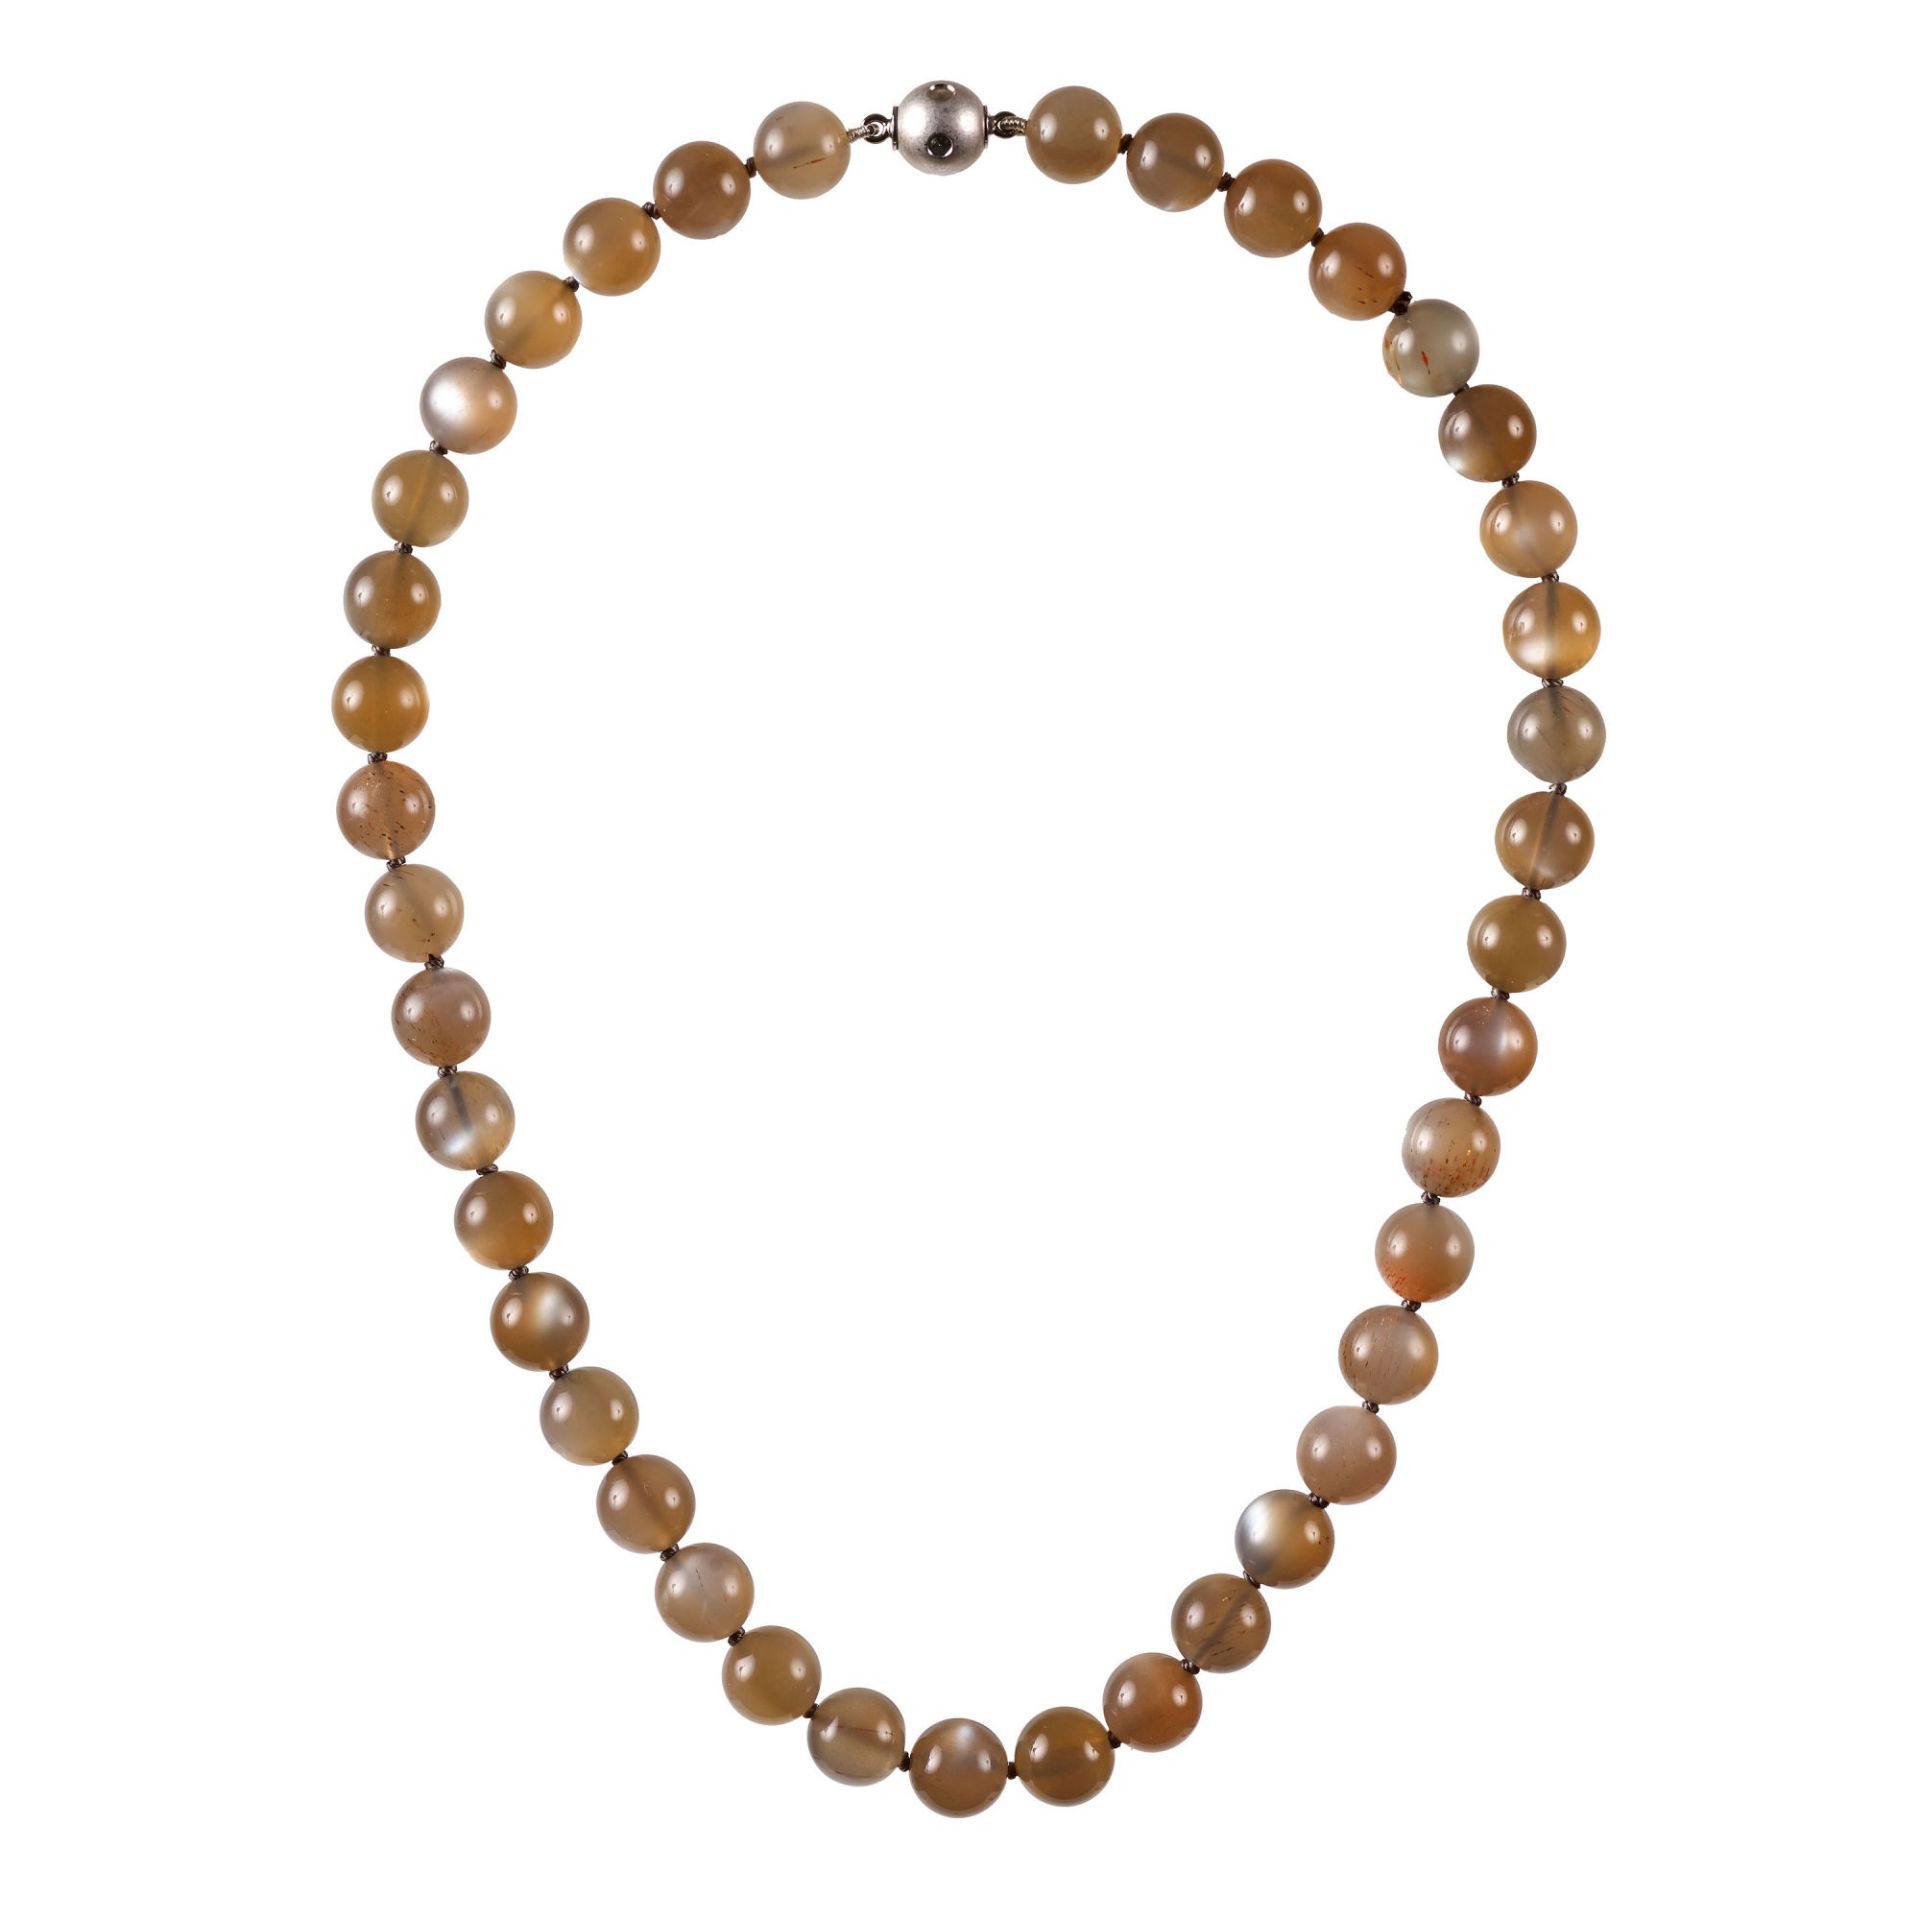 MONDSTEIN-COLLIER / Moonstone-necklace 